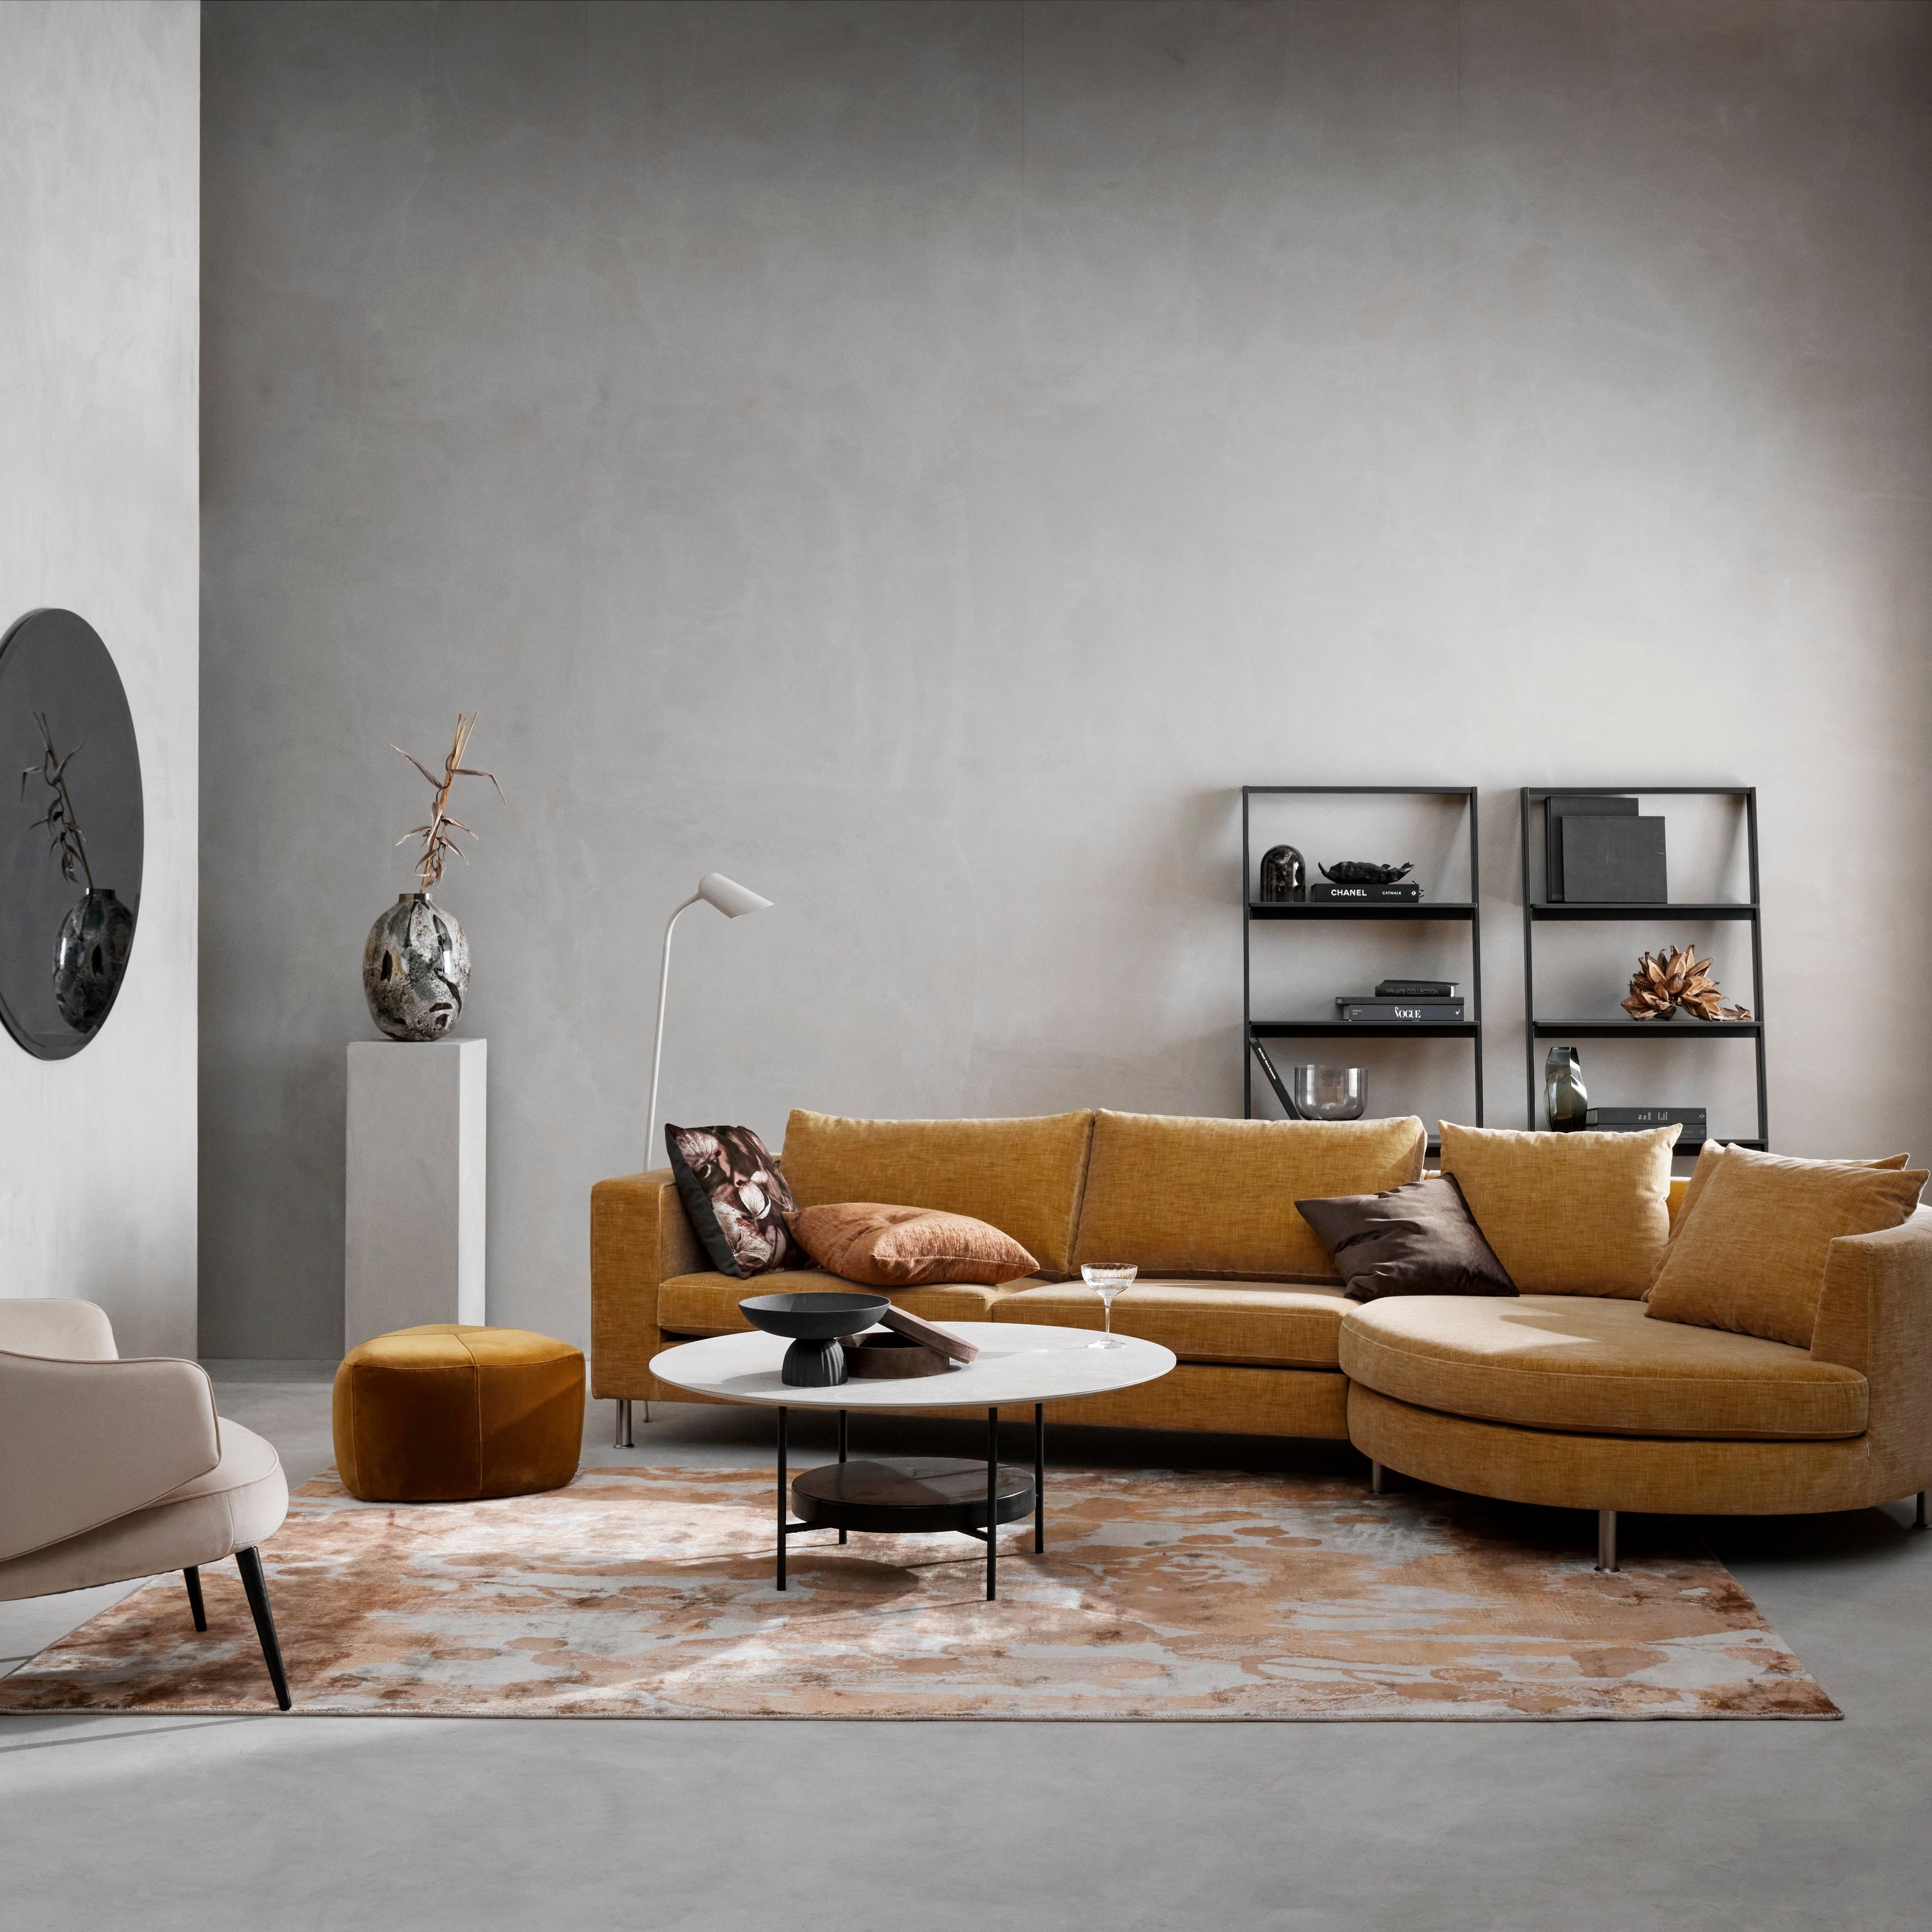 Sala de estar moderna com sofá seccional em mostarda, cadeira bege, tapete estampado e decoração minimalista.